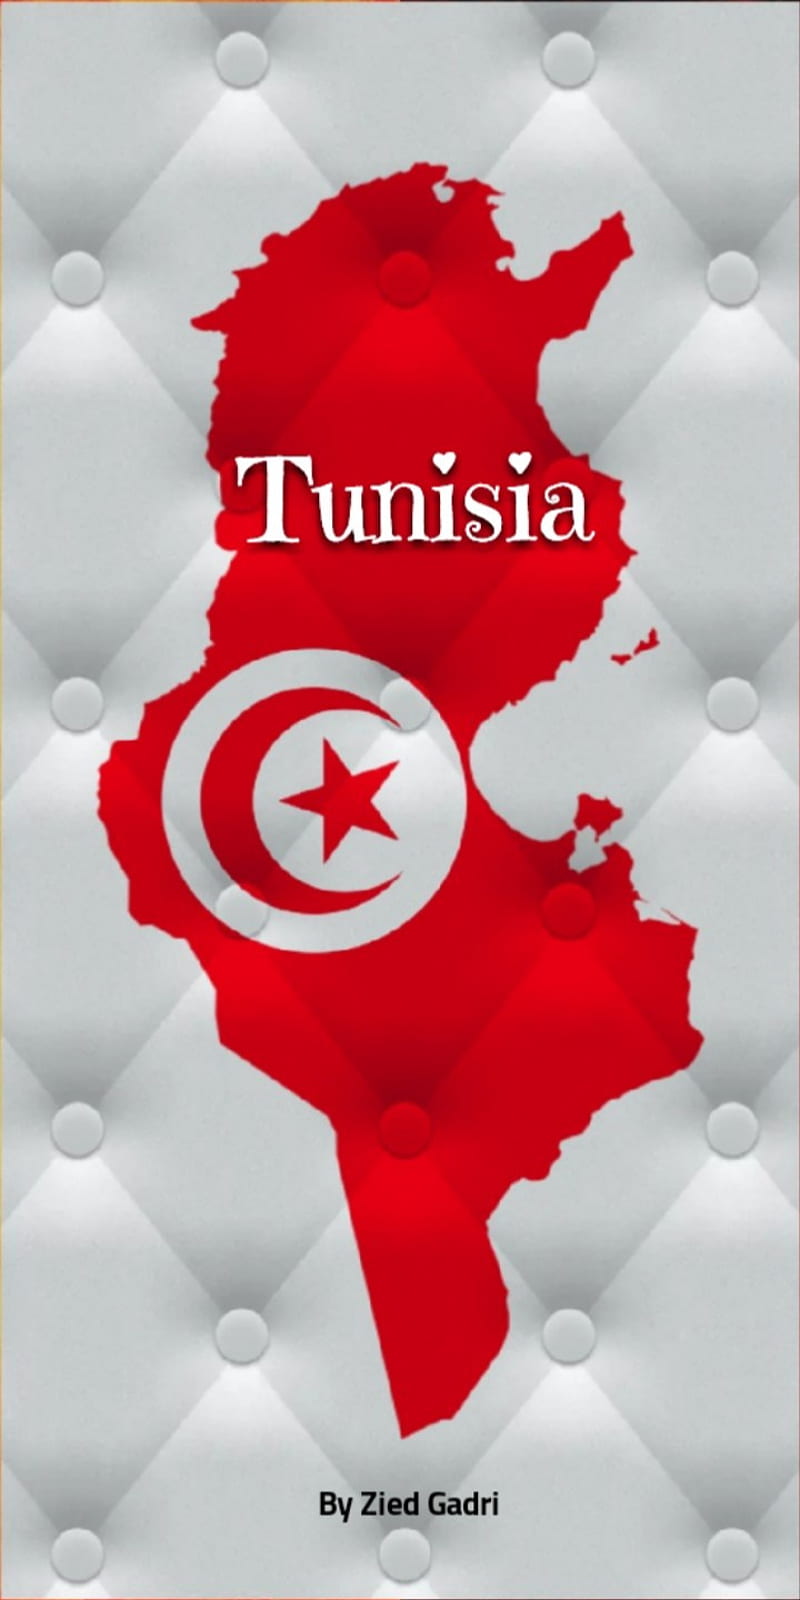 Tunisia , love, taraji, tun, tunis, tunisia, tunisie, HD phone wallpaper